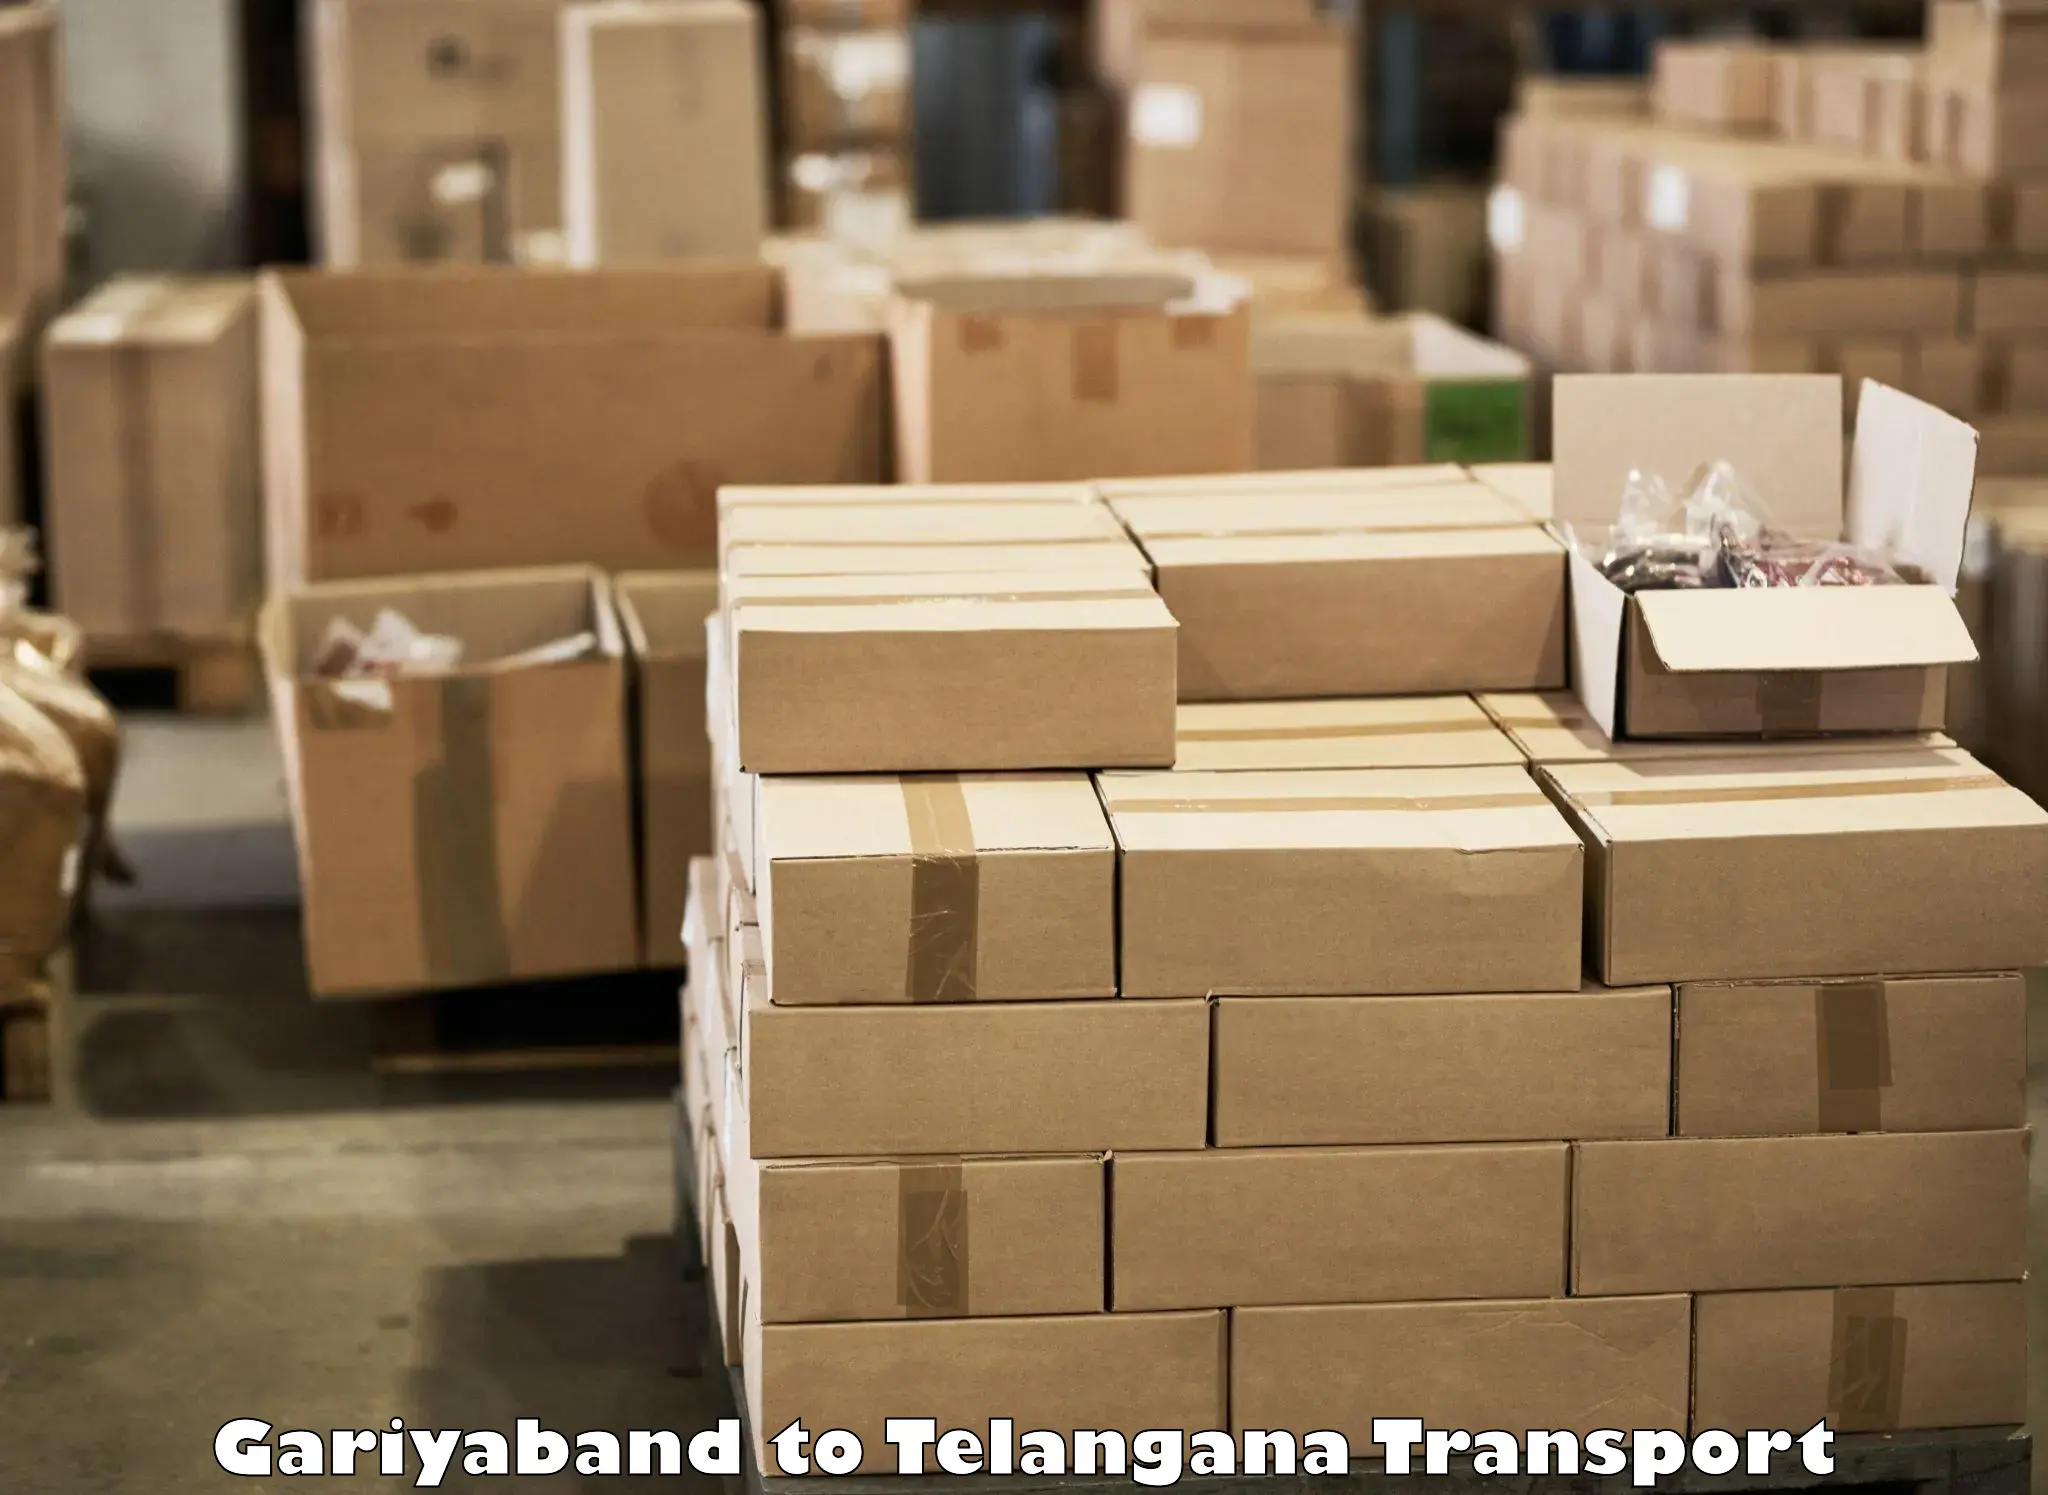 Container transport service Gariyaband to Jainoor